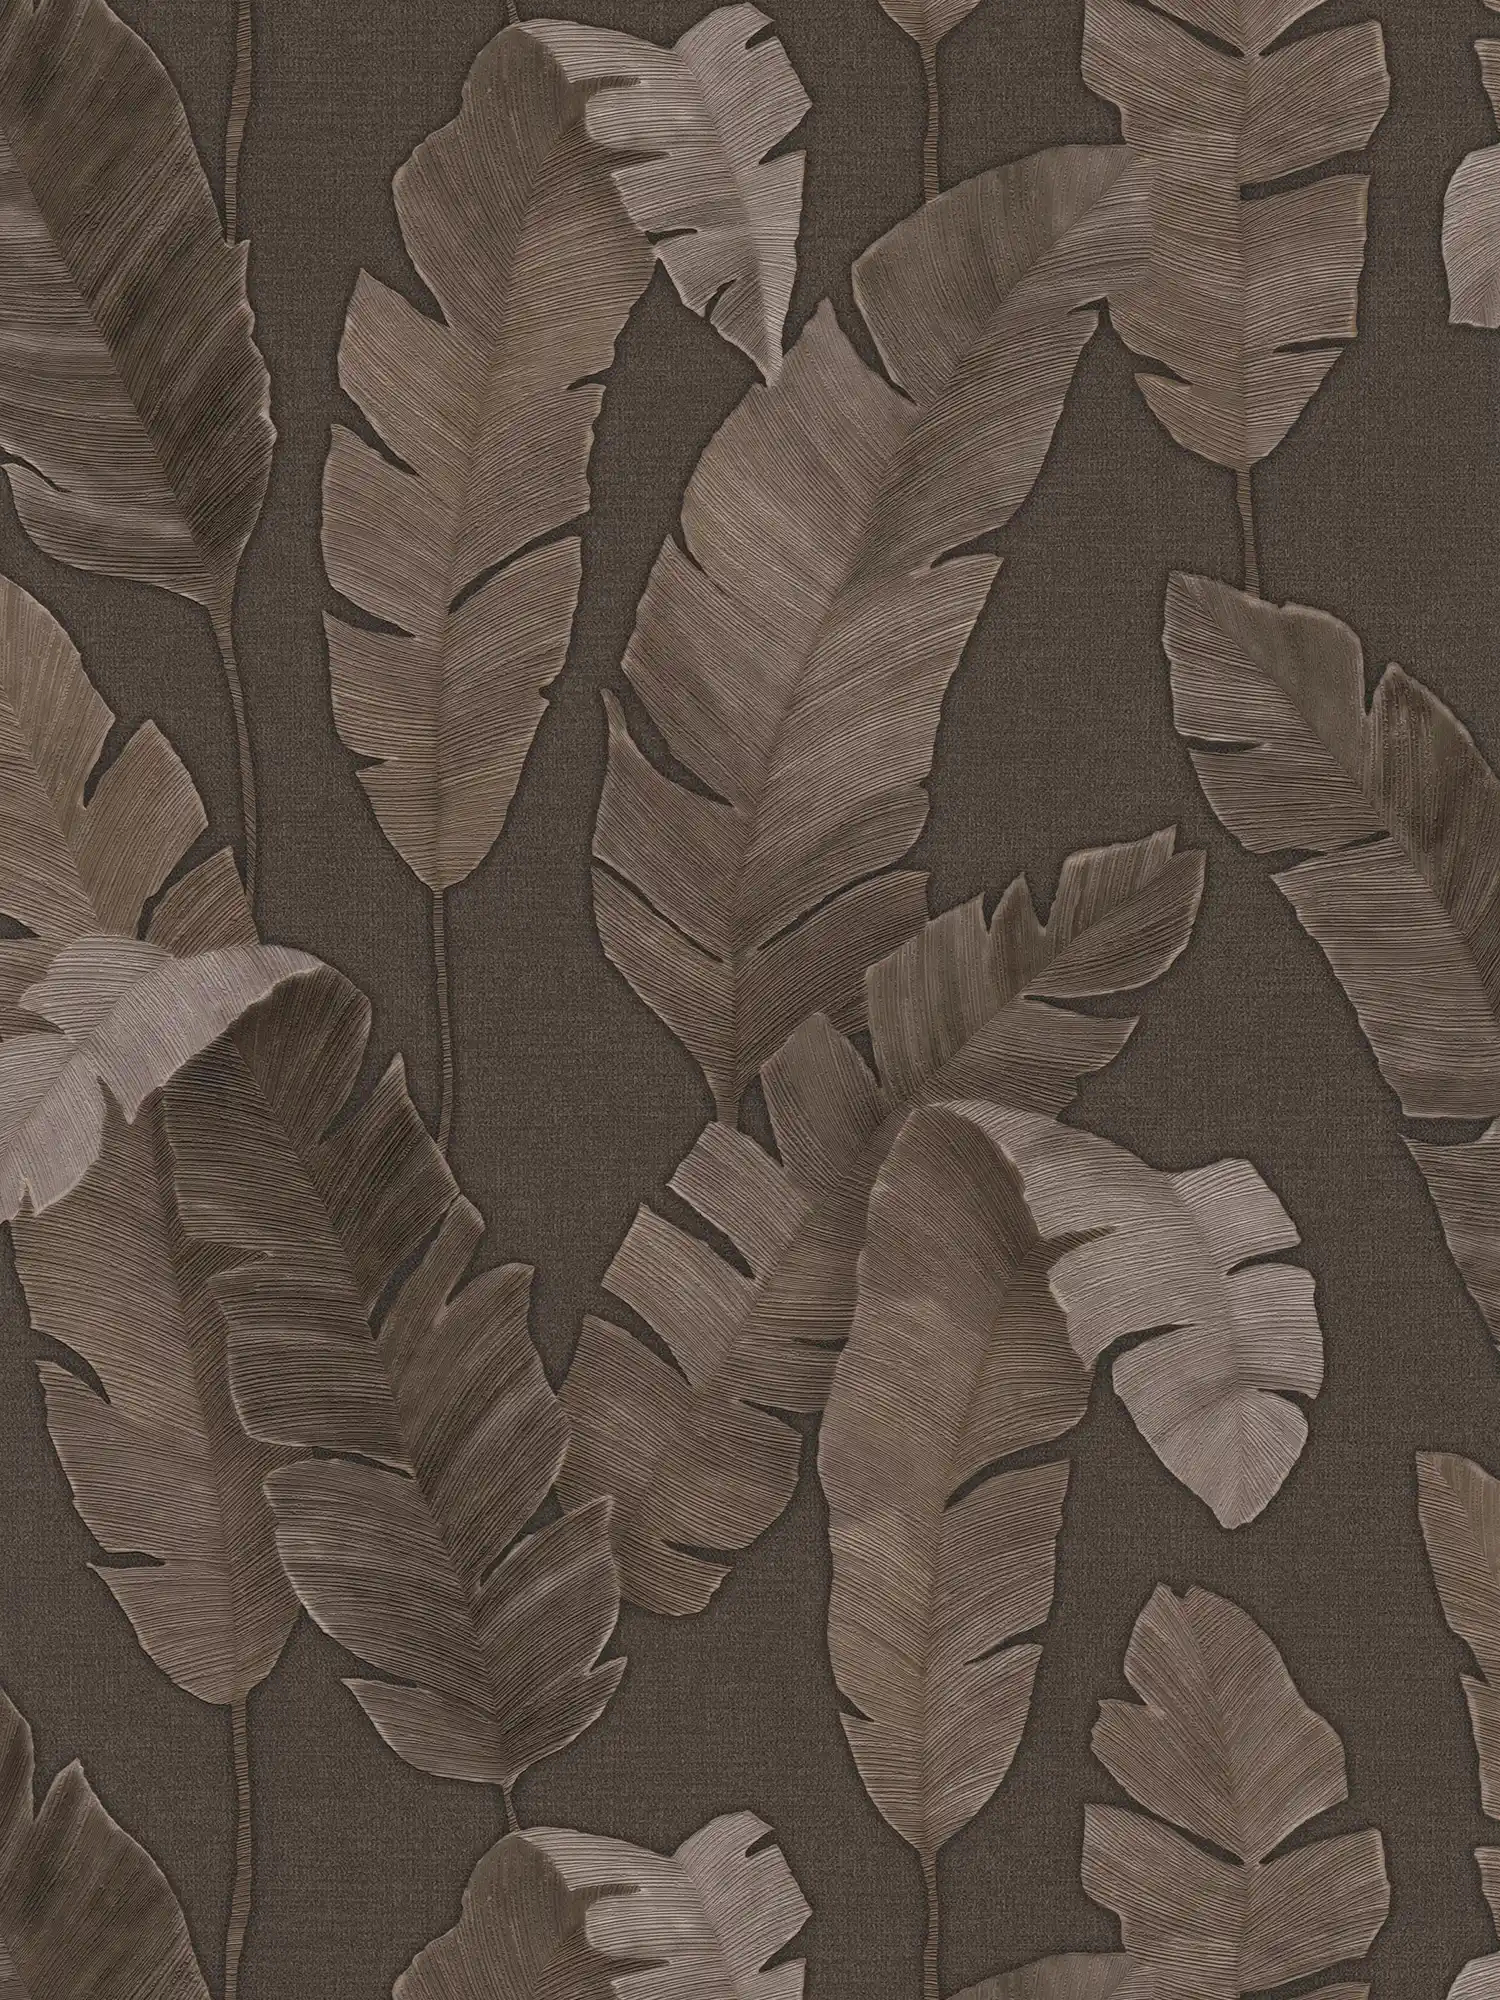 Dschungeltapete mit leicht glänzenden Palmenblätter – Braun
